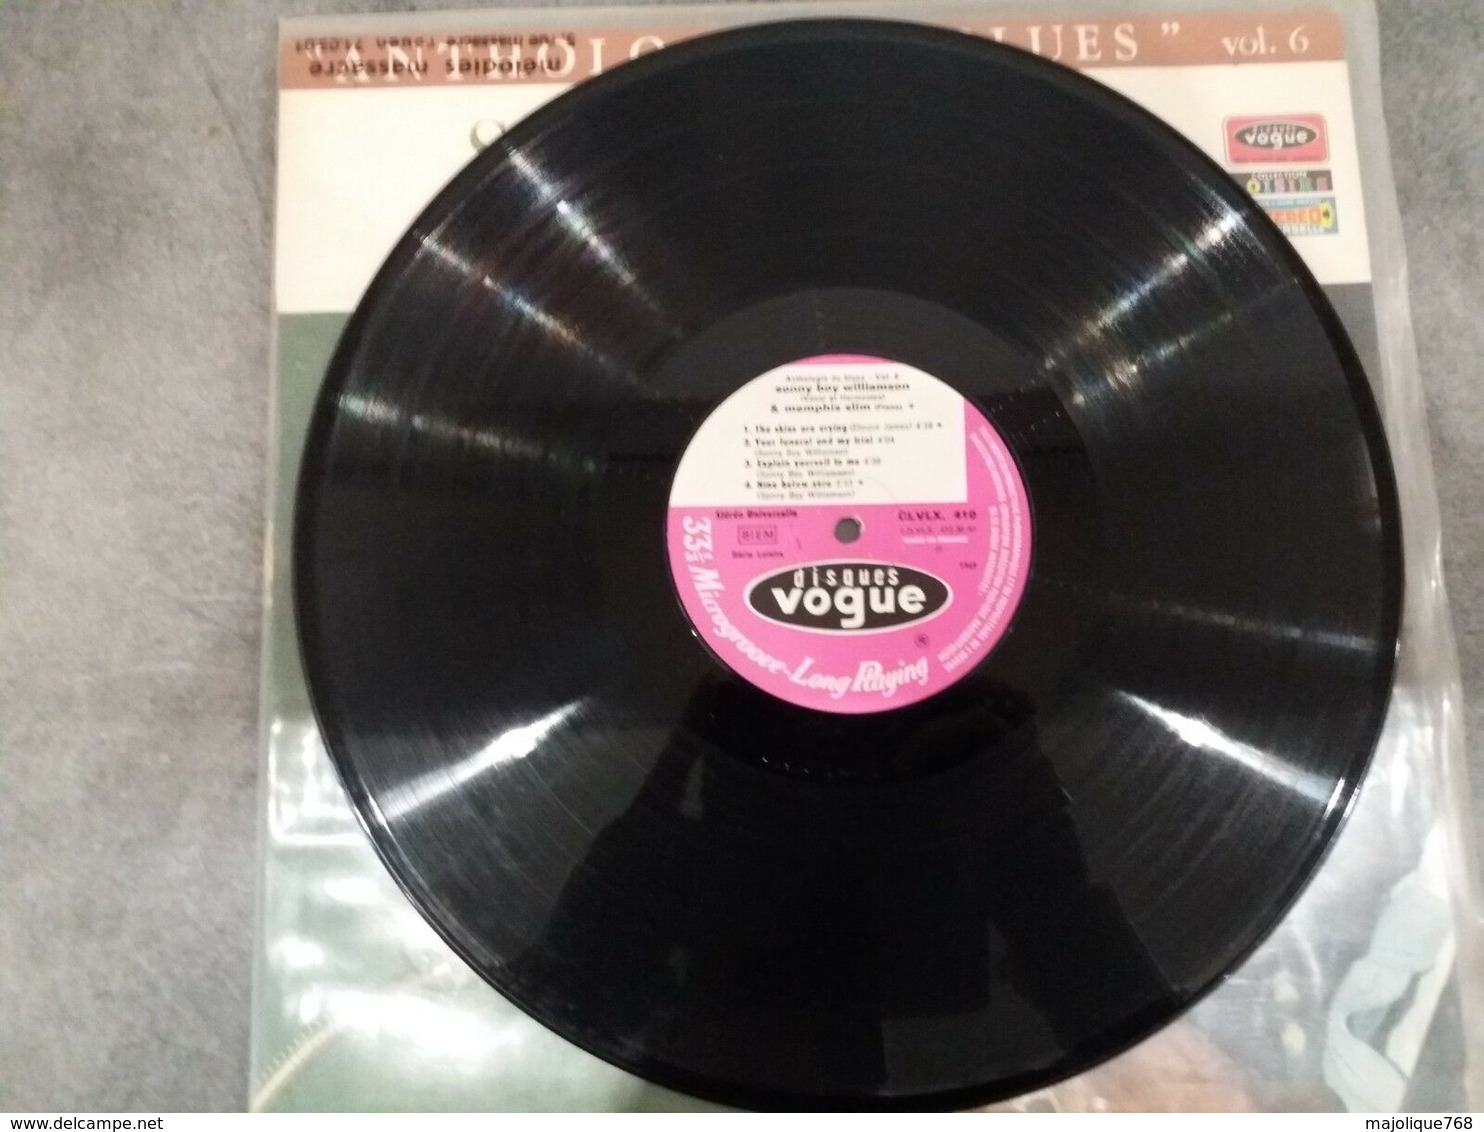 Anthologie Du Blues Vol 6 - Sonny Boy Williamson & Memphis Slim - Vogue  - Stereo CLVLX 410 Von 1969  Vinyl LP Original - Blues